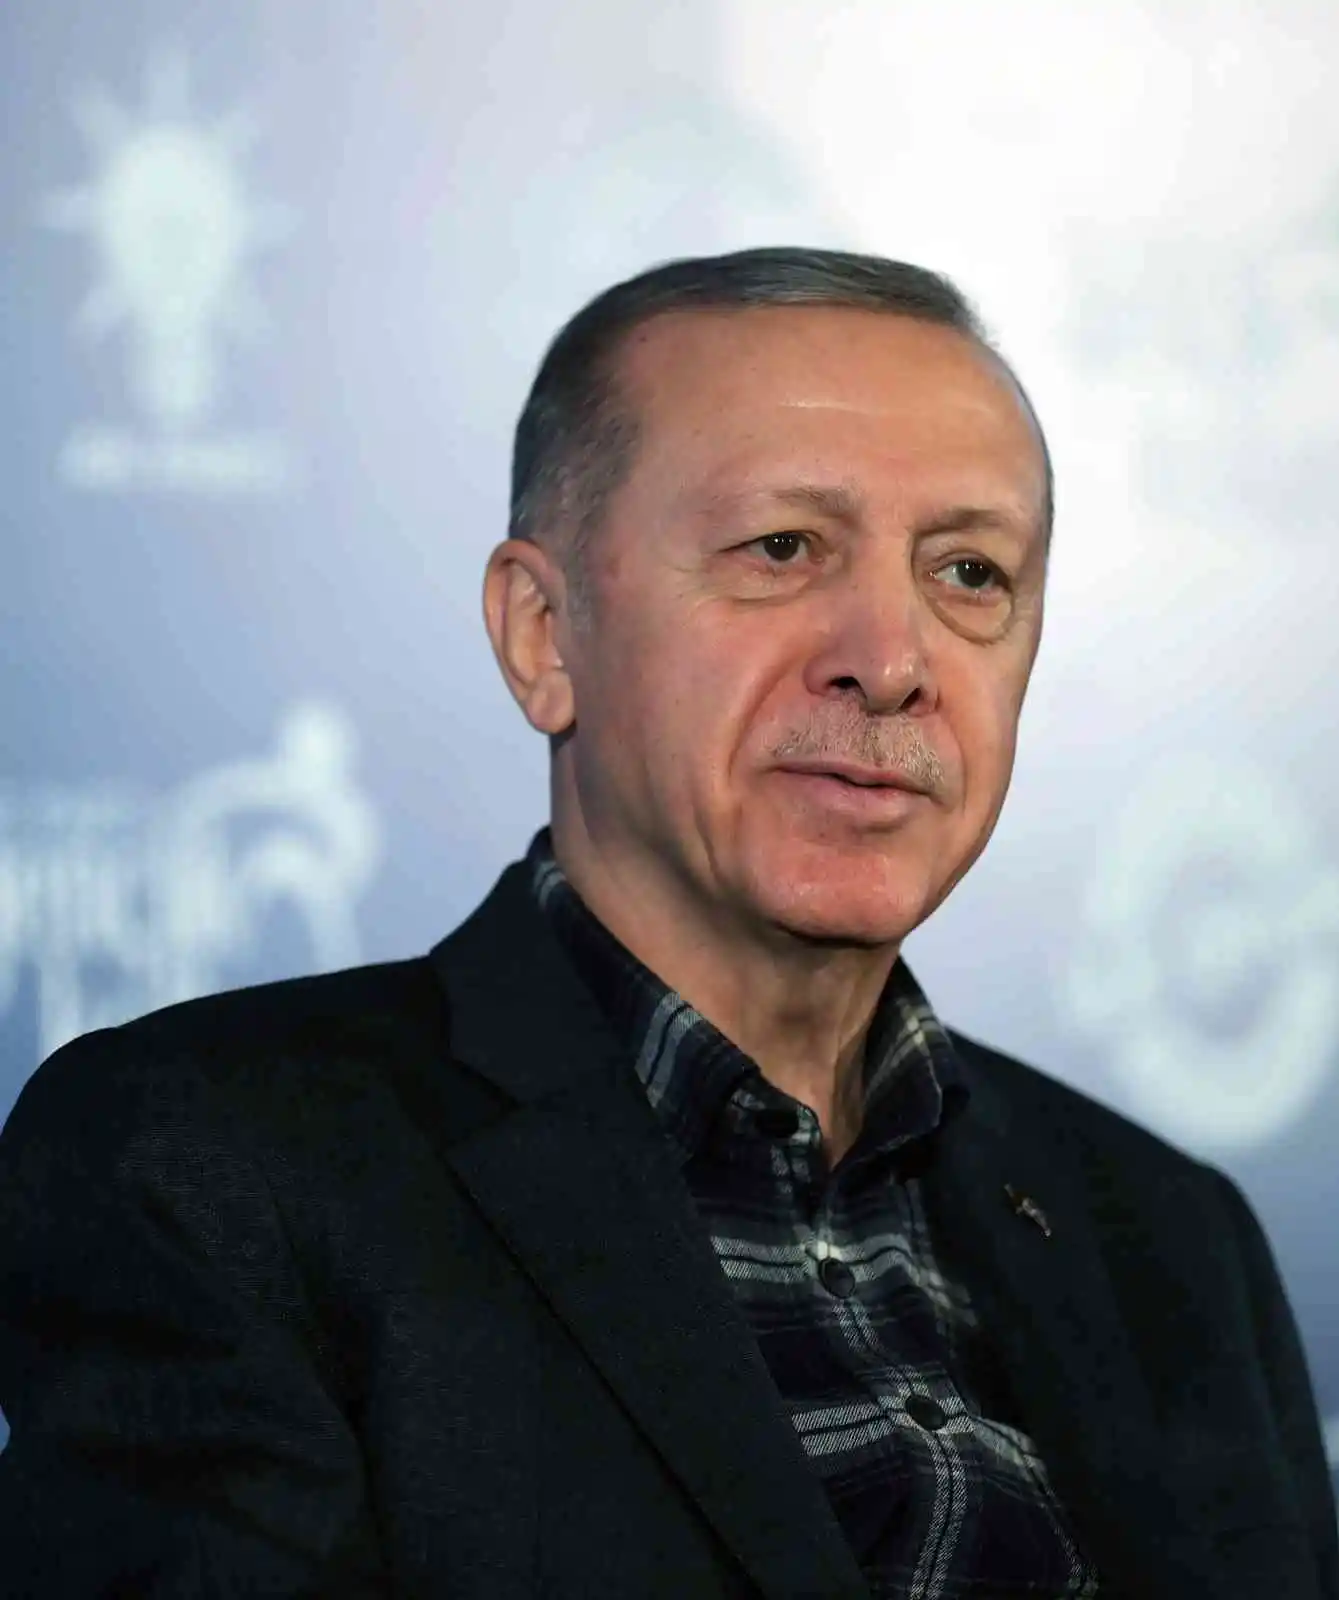 Cumhurbaşkanı Erdoğan: "10 Mart'ta yetkimi kullanacağım, ondan sonra 60 gün süre var"
